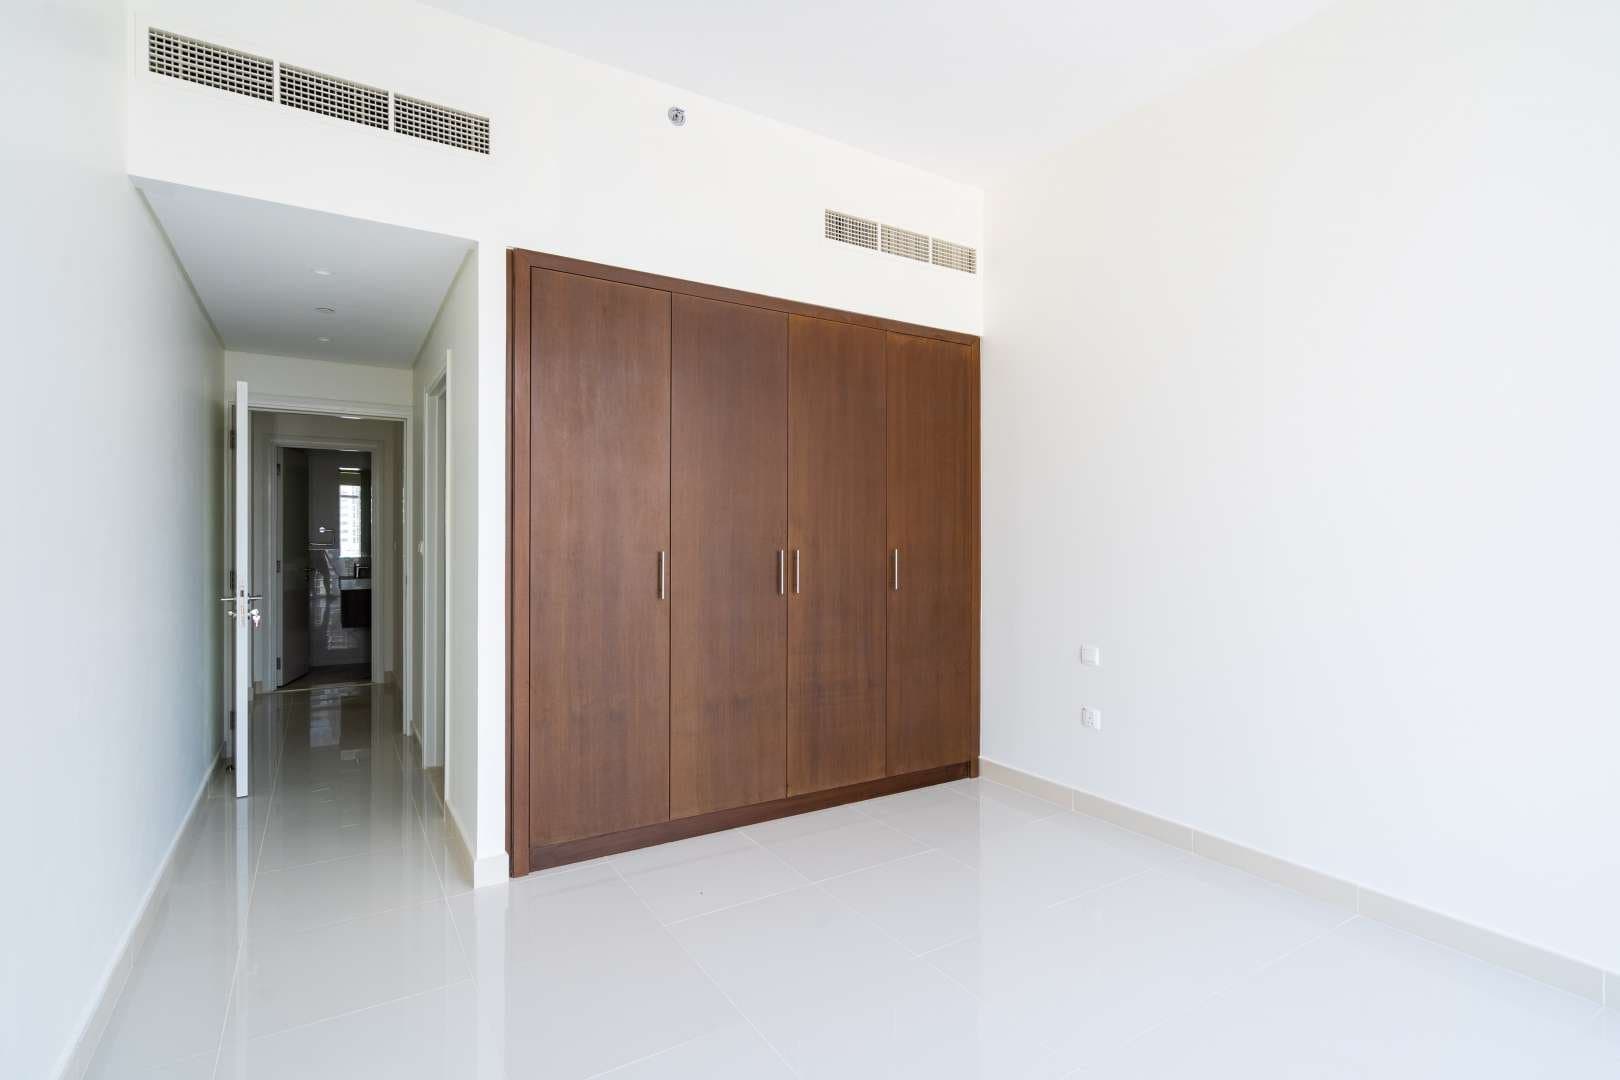 2 Bedroom Apartment For Rent Boulevard Crescent Lp05079 94dfe11c01d0380.jpg